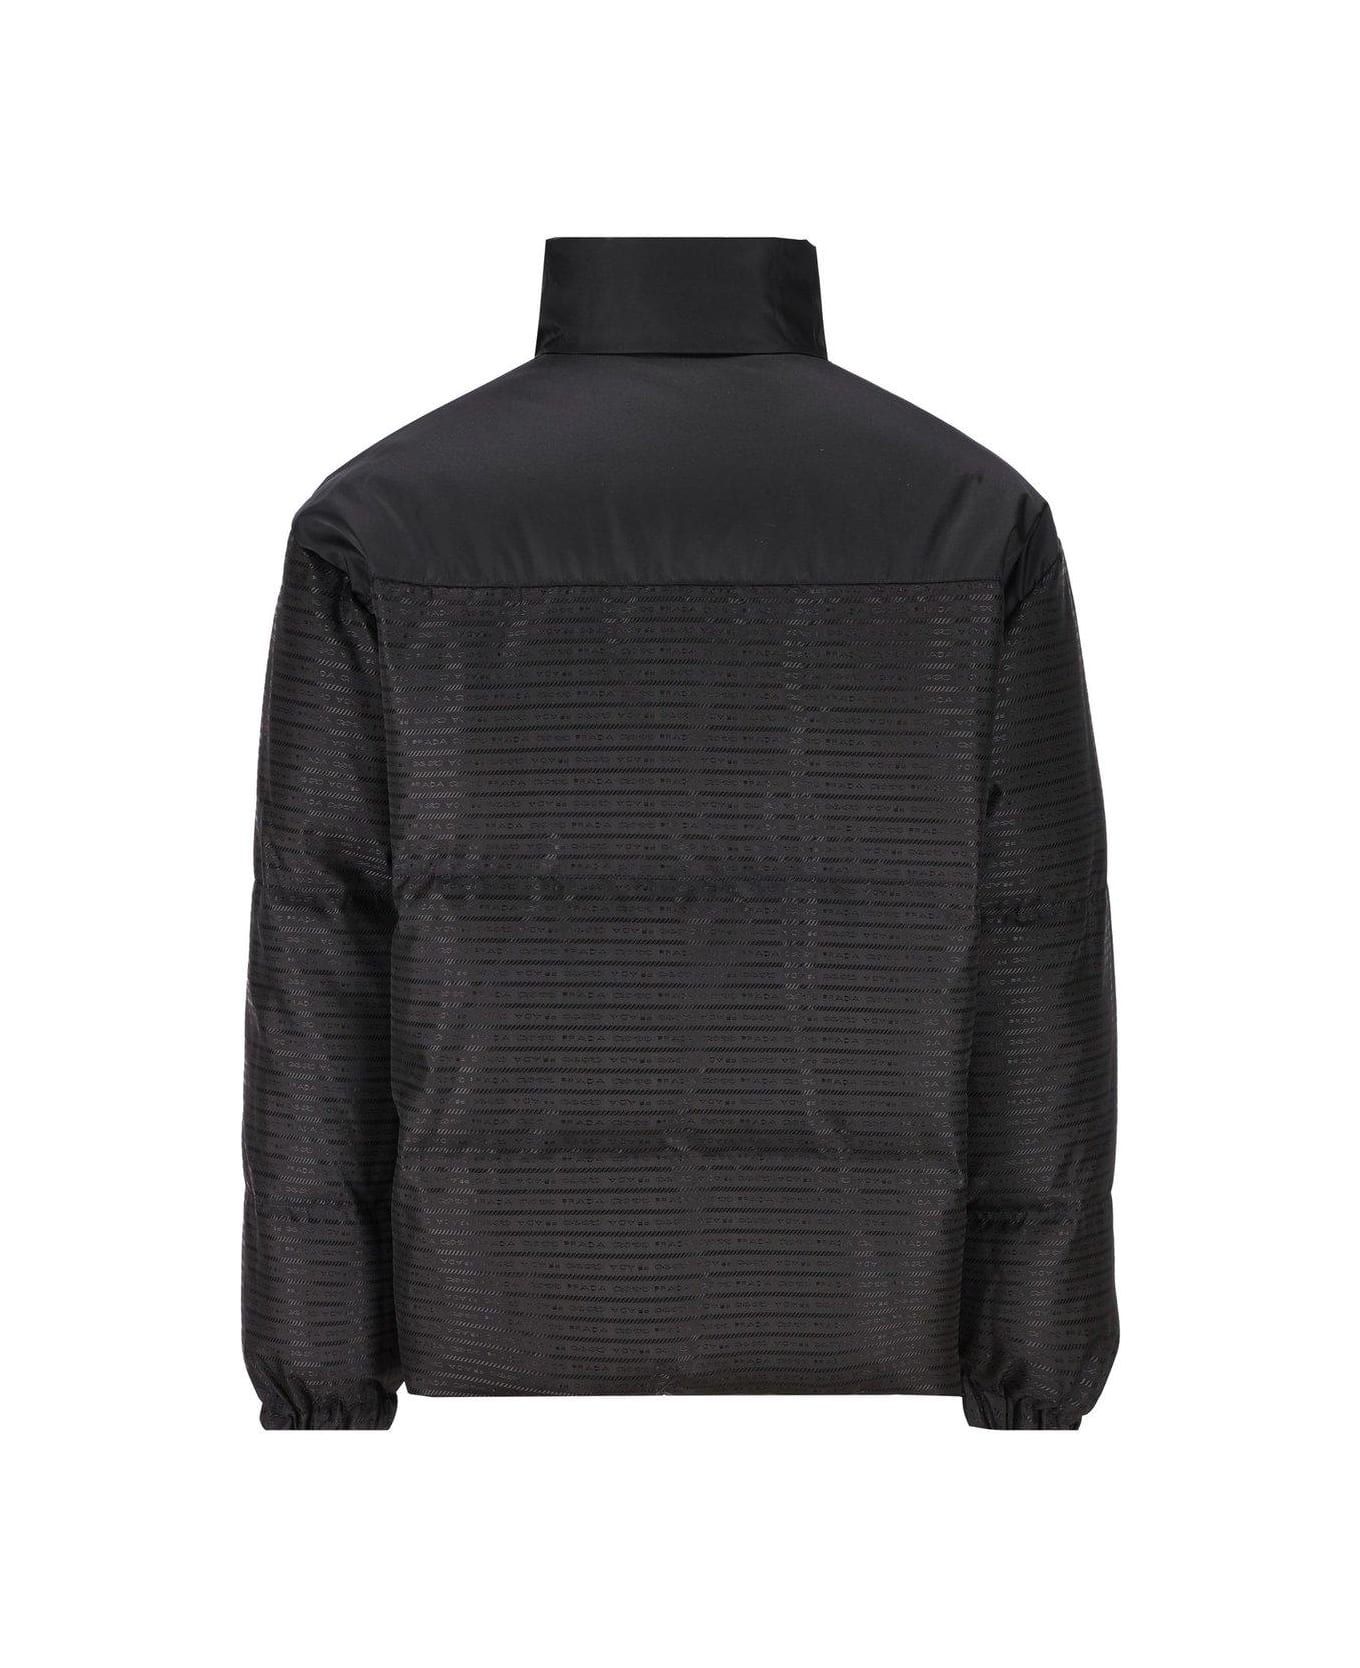 Prada Reversible Zip-up Jacket - Nero ダウンジャケット